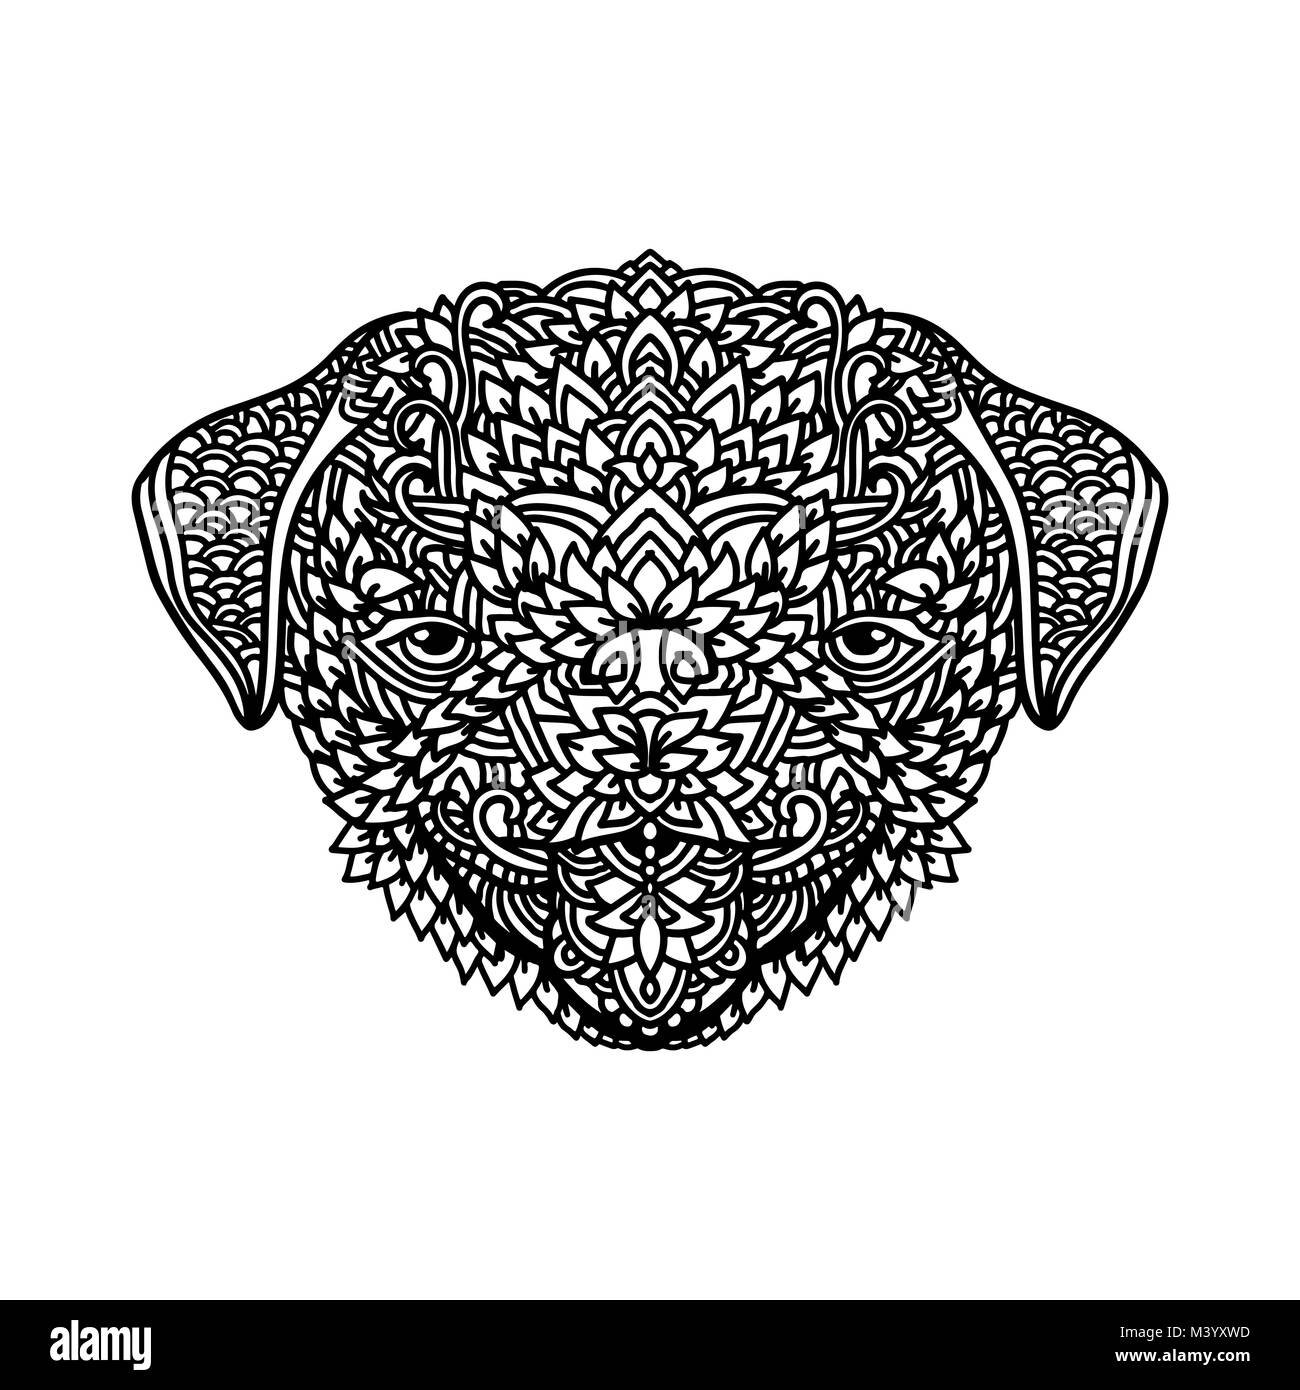 Le pug noir et blanc avec des décorations florales pour des profils à colorier. Zentagle pattern. Doodle vecteur illustration. Portrait of a cute puppy. Illustration de Vecteur